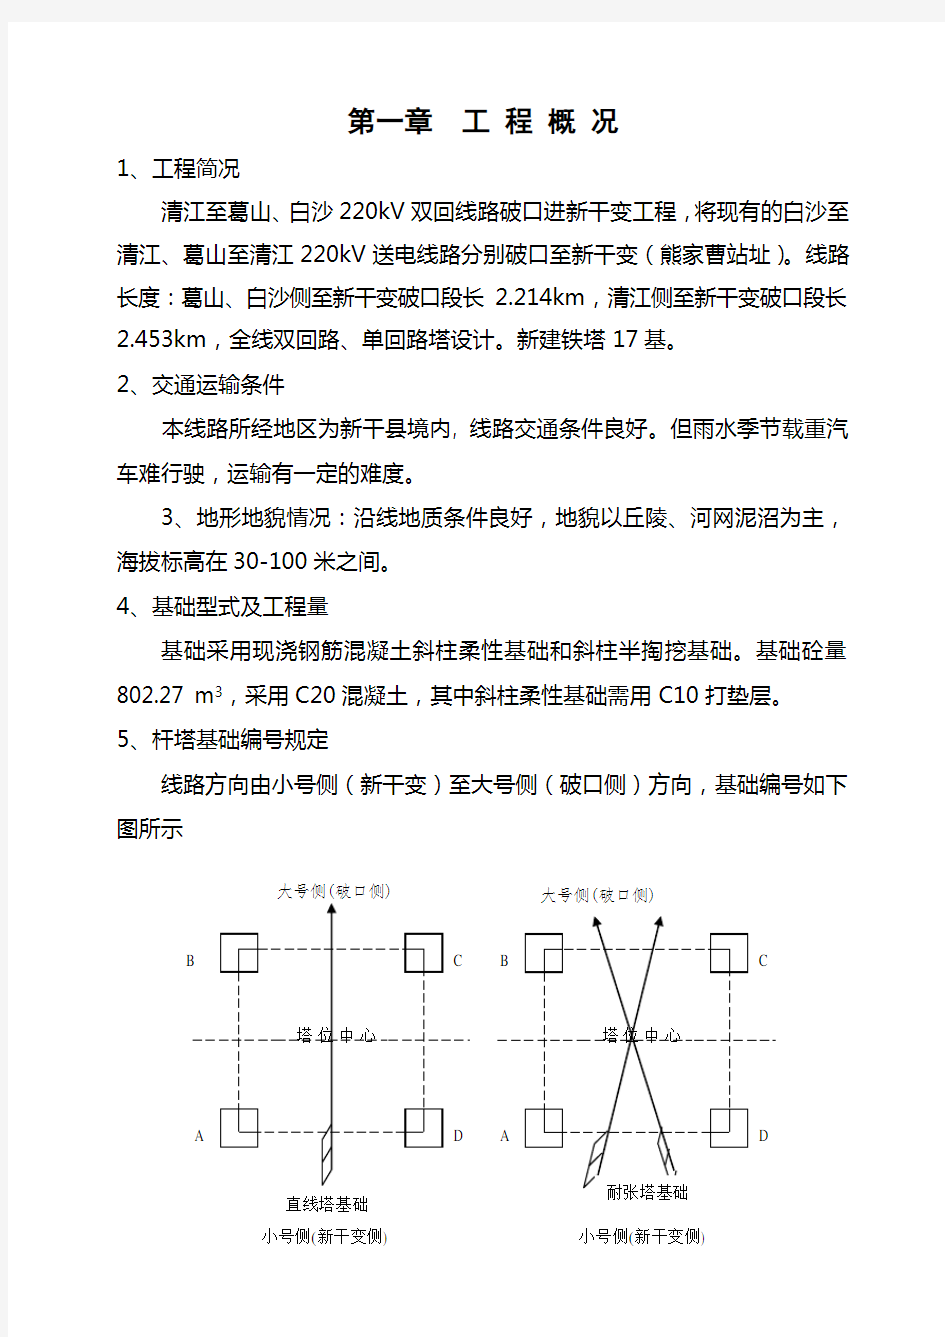 电力铁塔基础施工方案 (4)(完整版)